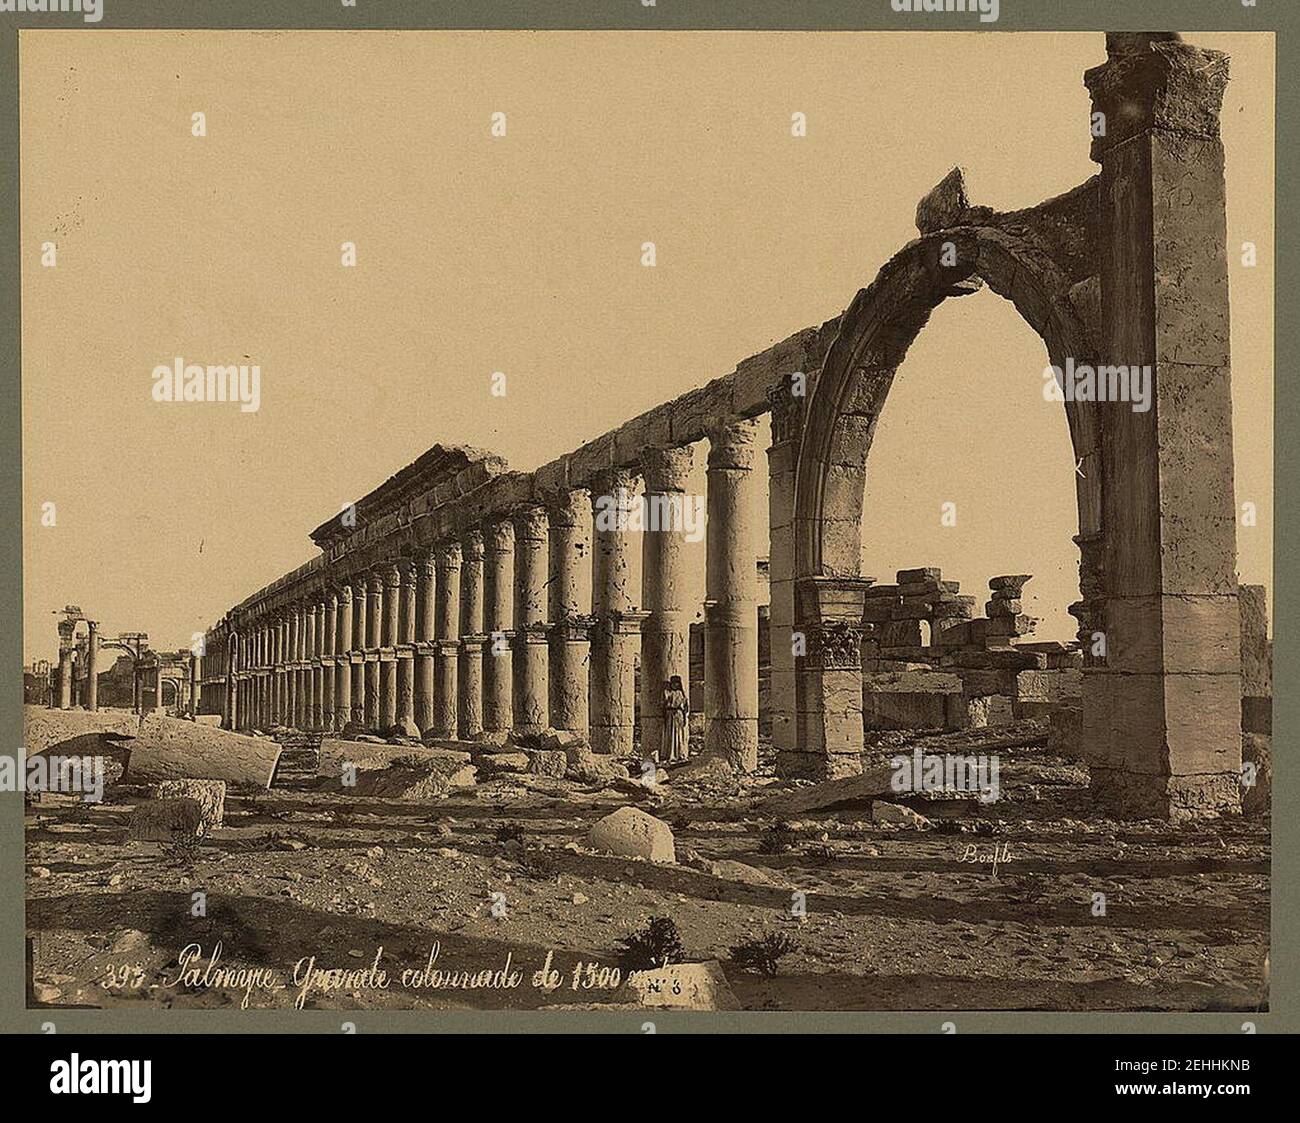 Palmyre. Grande colonnade de 1500 métré - Bonfils. Banque D'Images